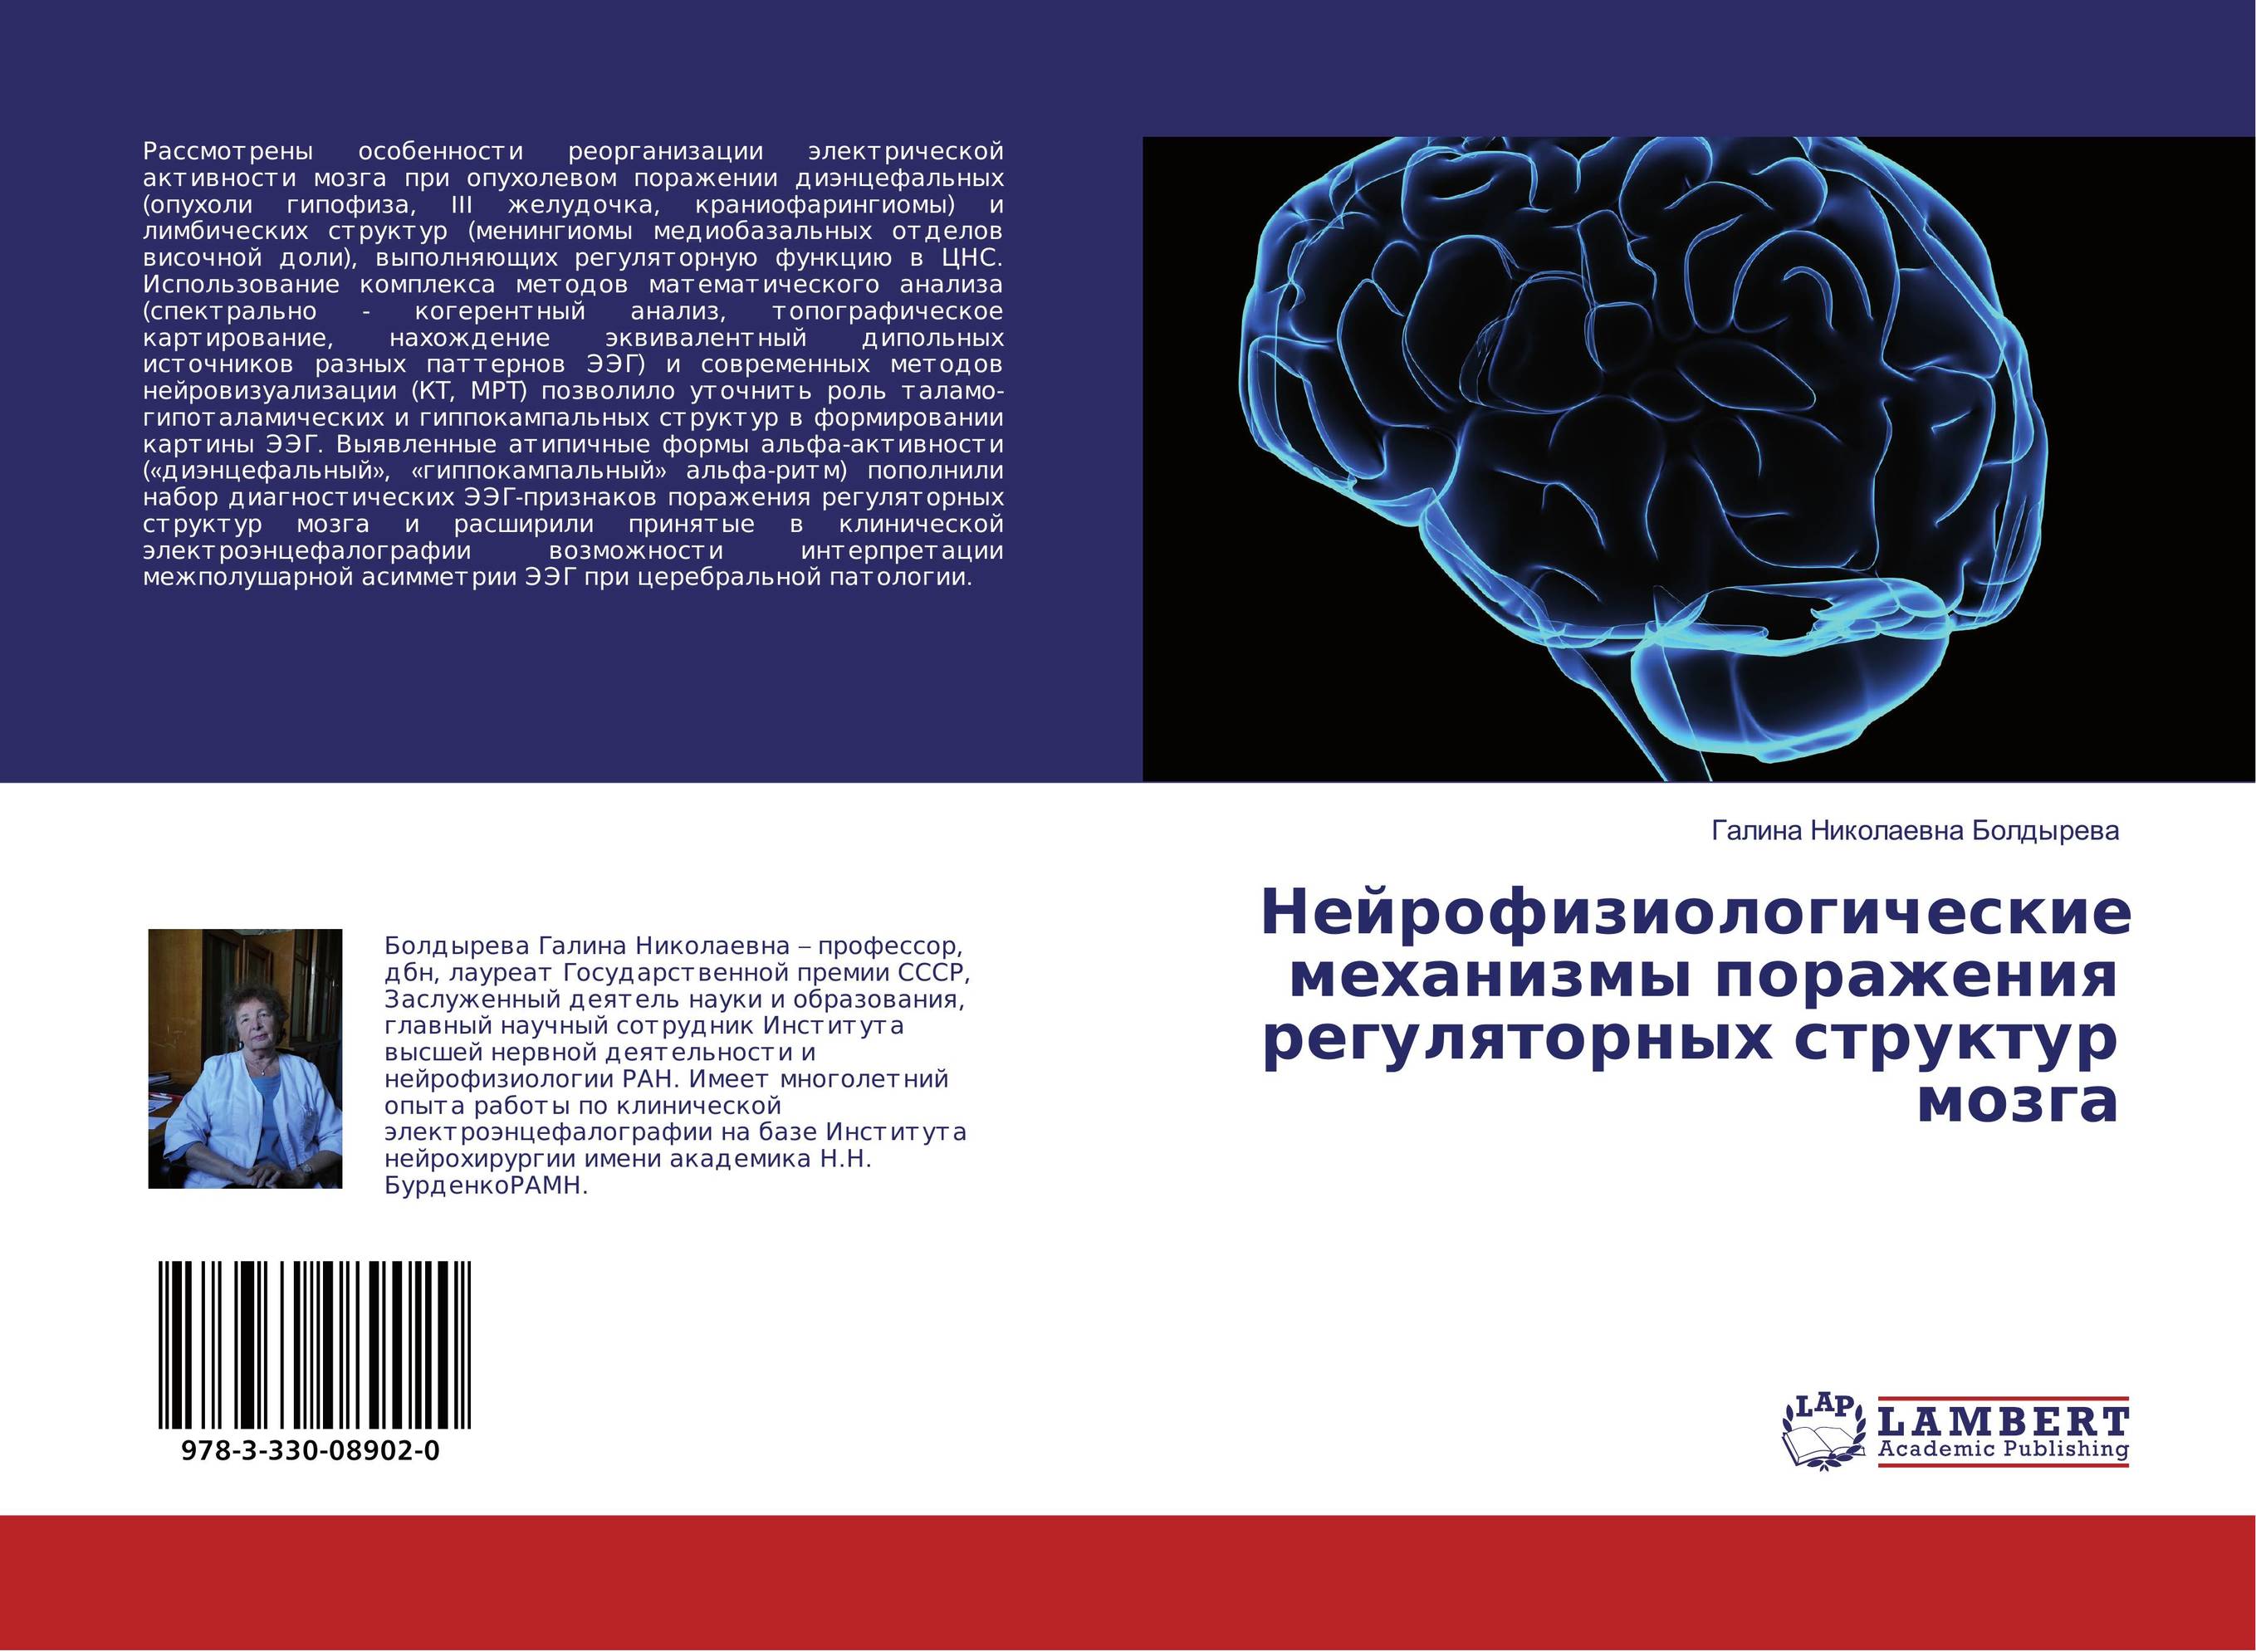 
        Нейрофизиологические механизмы поражения регуляторных структур мозга..
      